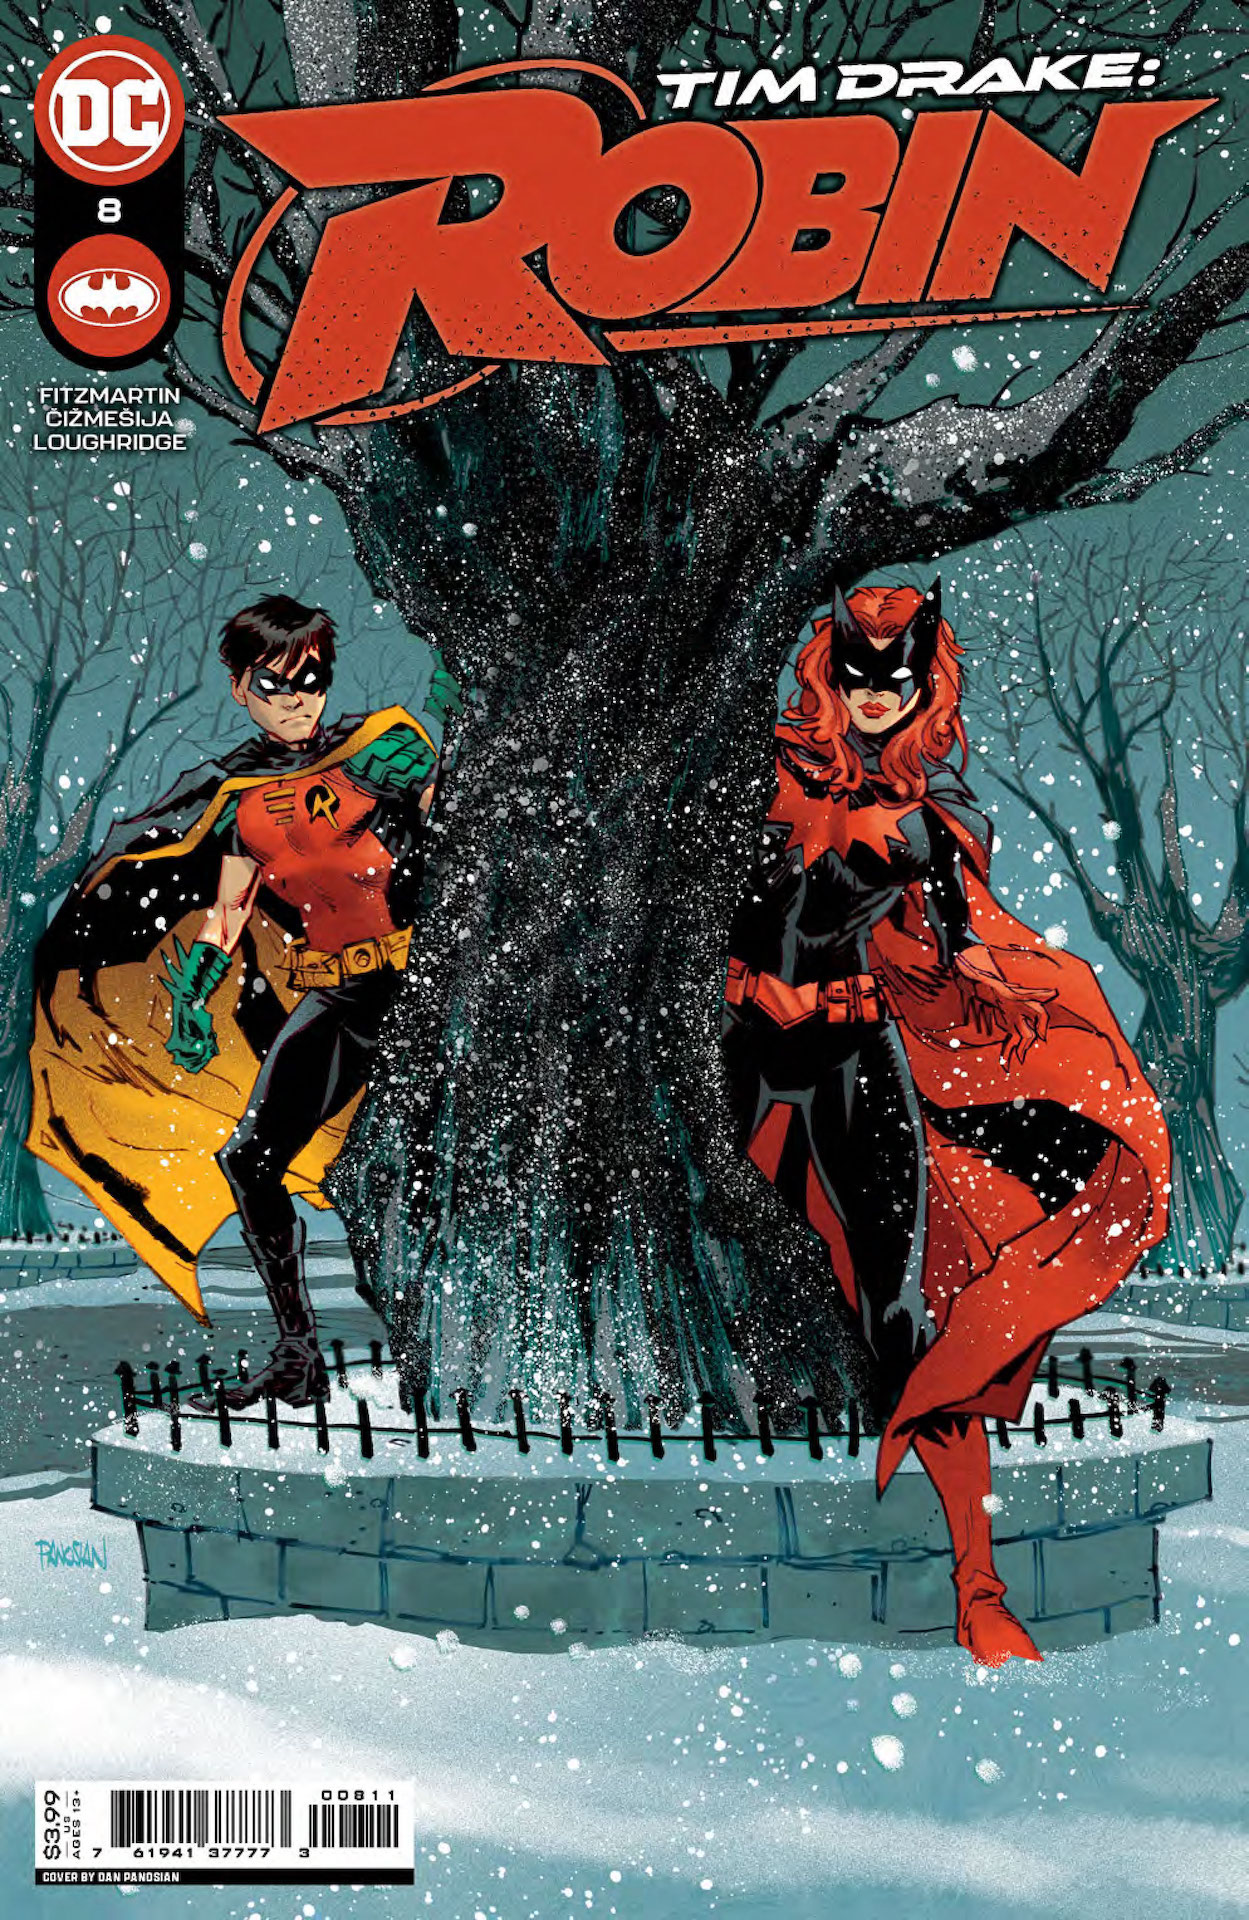 DC Preview: Tim Drake: Robin #8